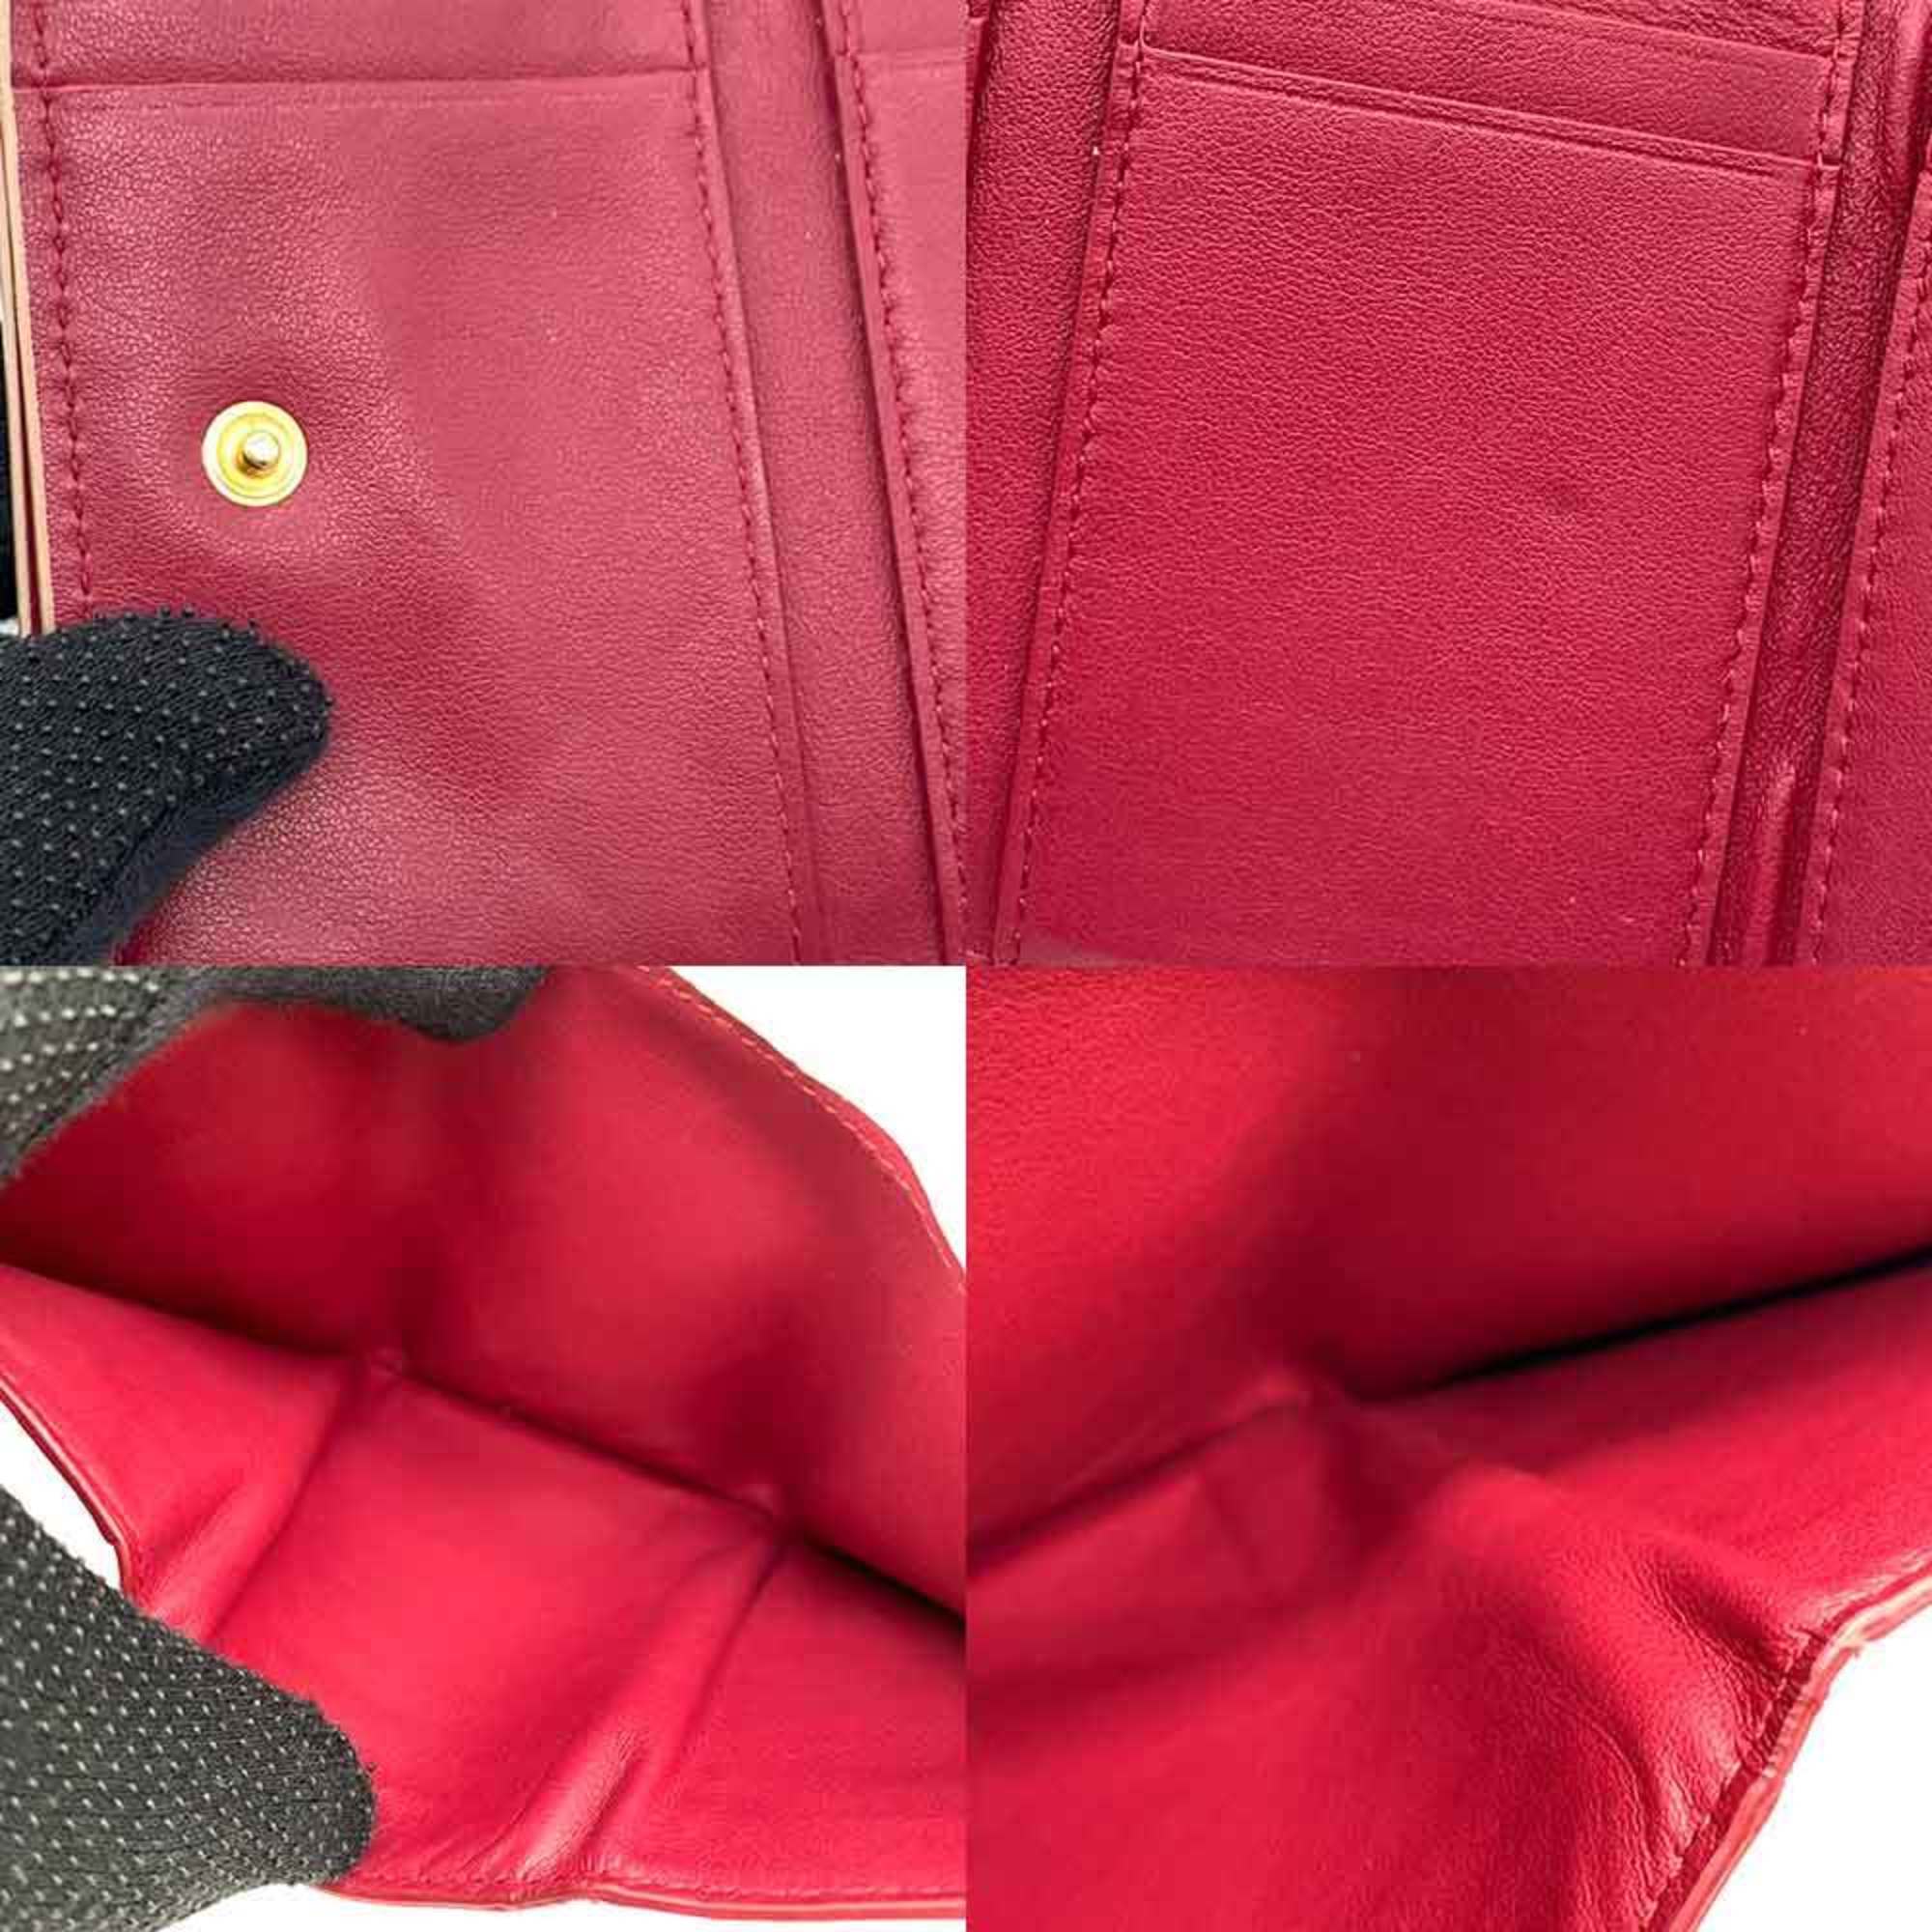 Bottega Veneta Tri-fold Wallet Intrecciato Beige Leather Compact Women's 635561 BOTTEGA VENETA